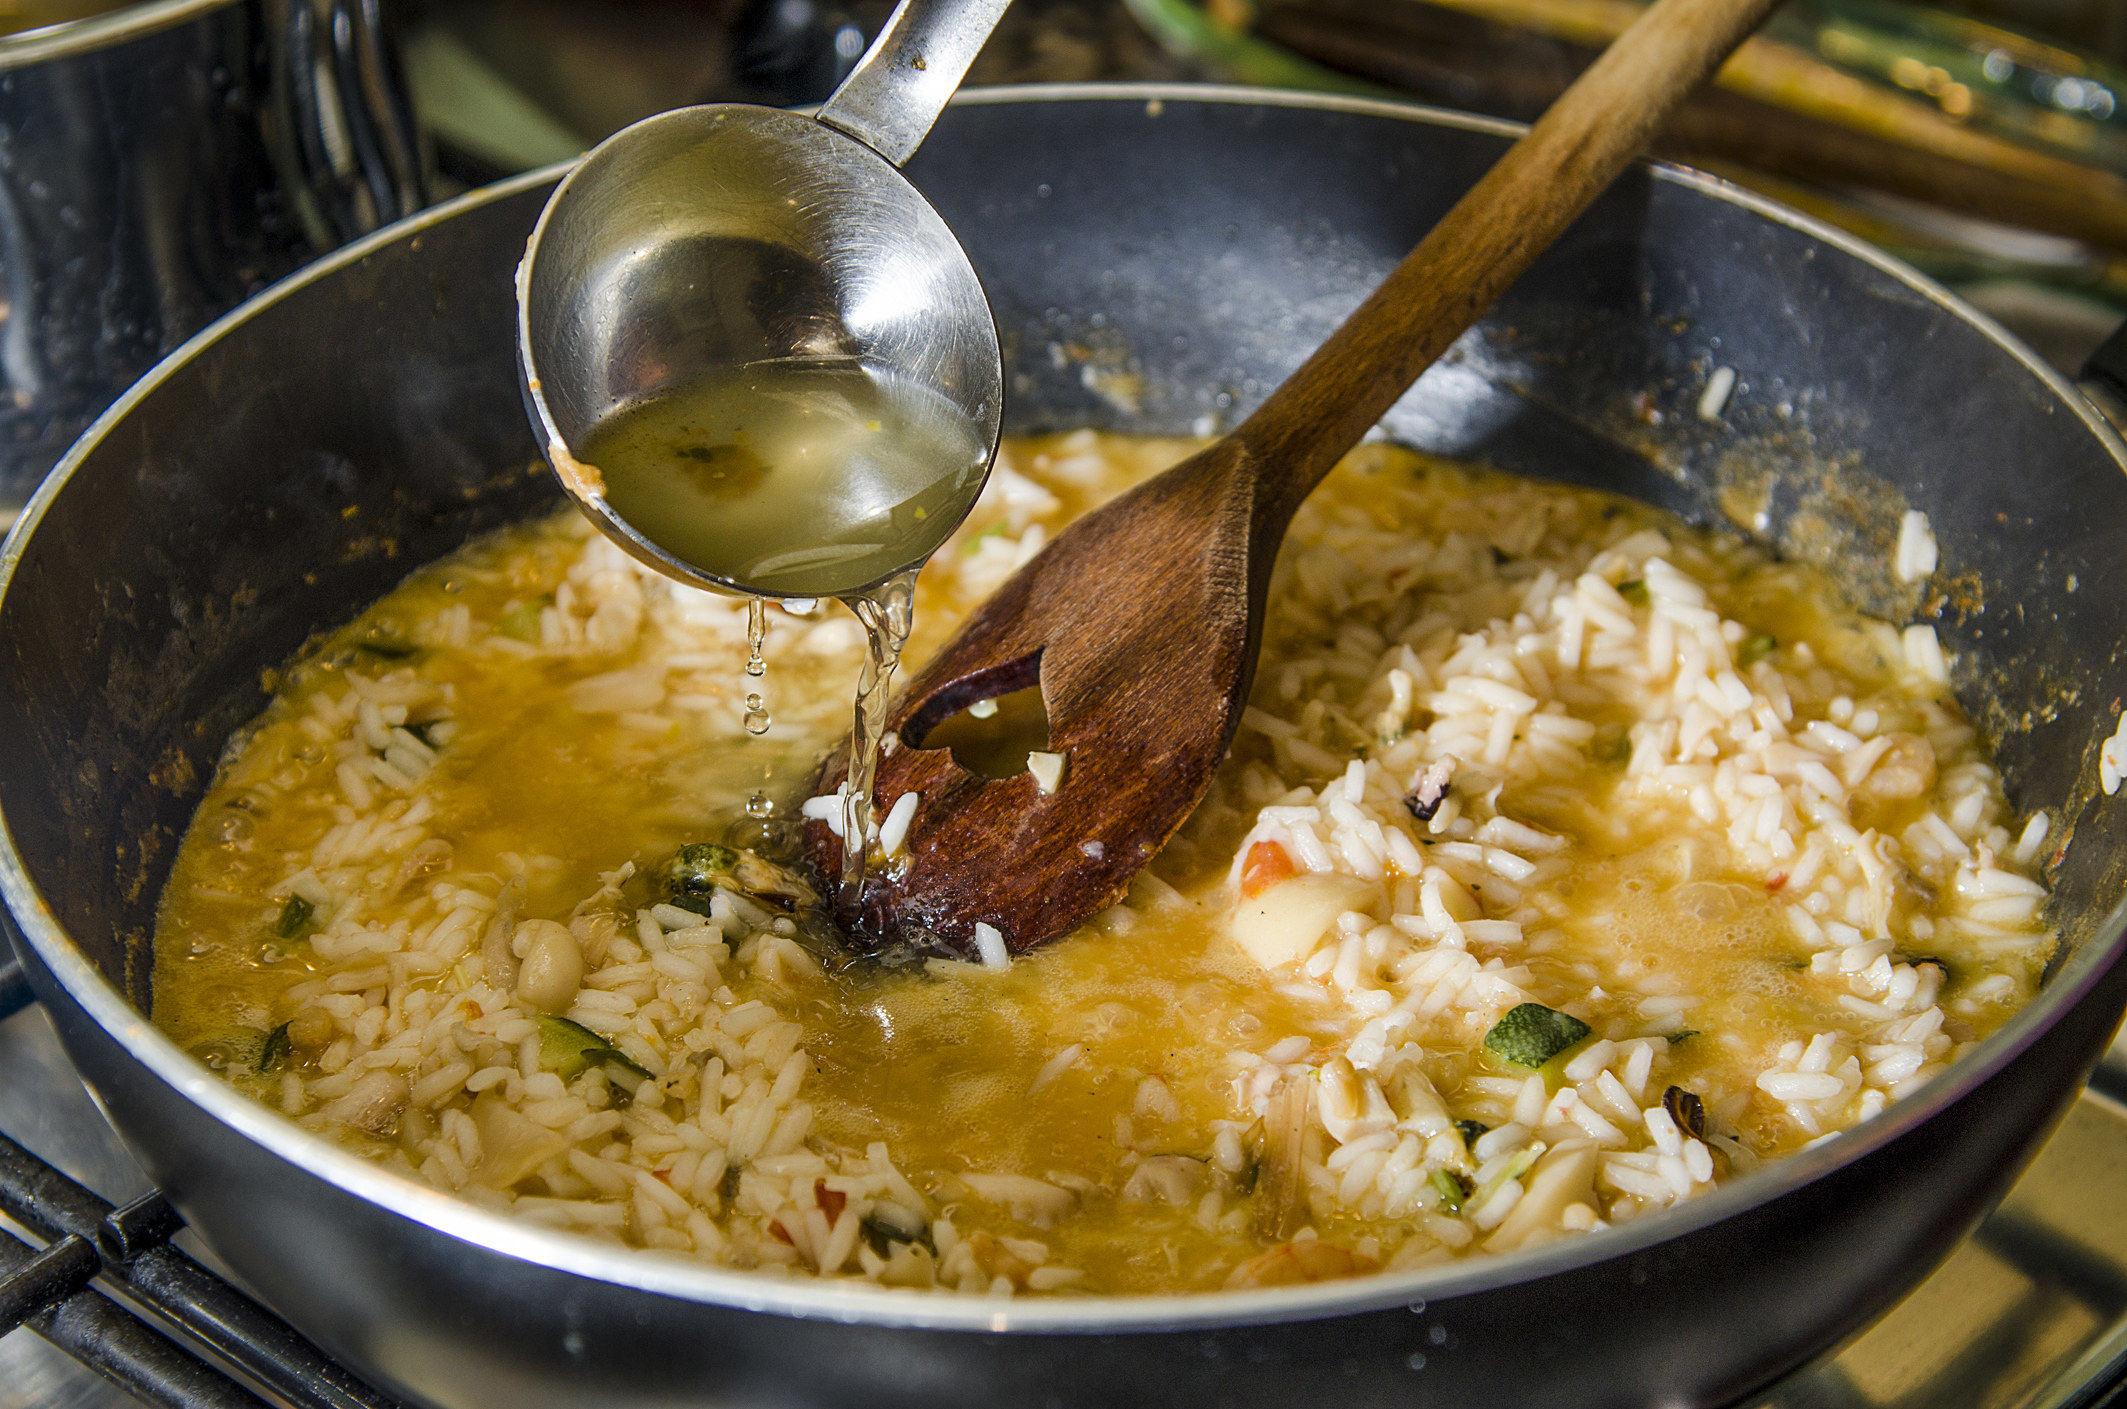 Pouring rice vinegar into risotto